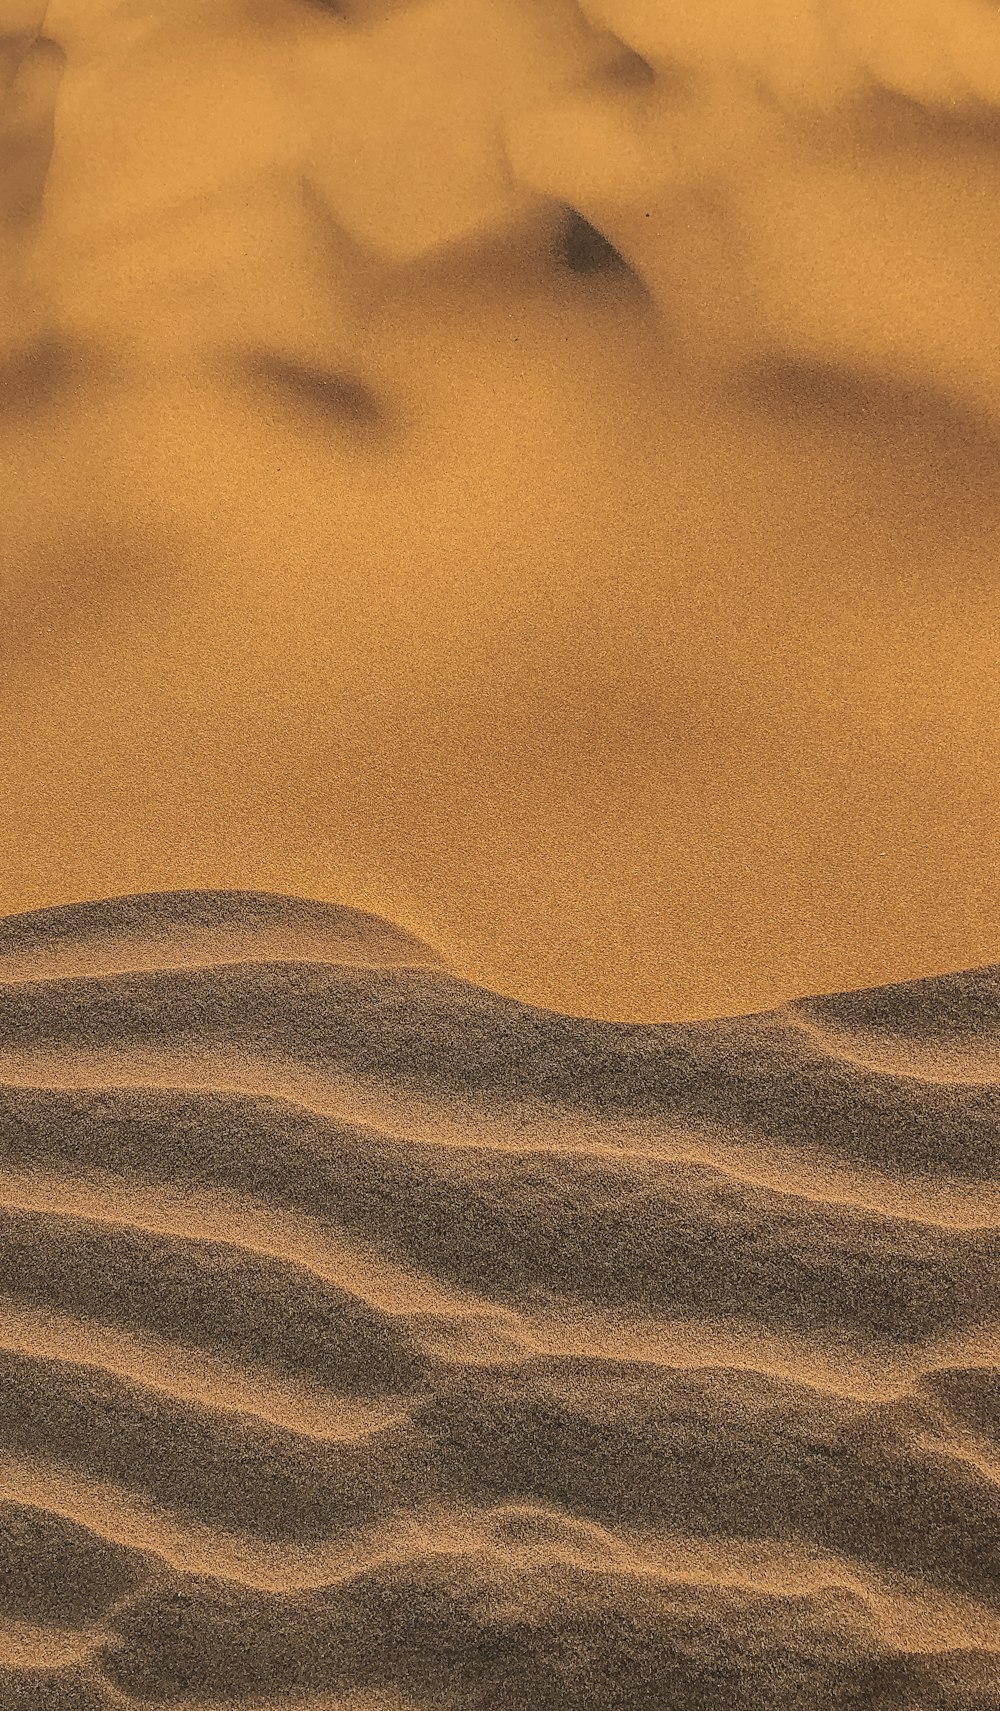 Un'immagine di un deserto con dune di sabbia